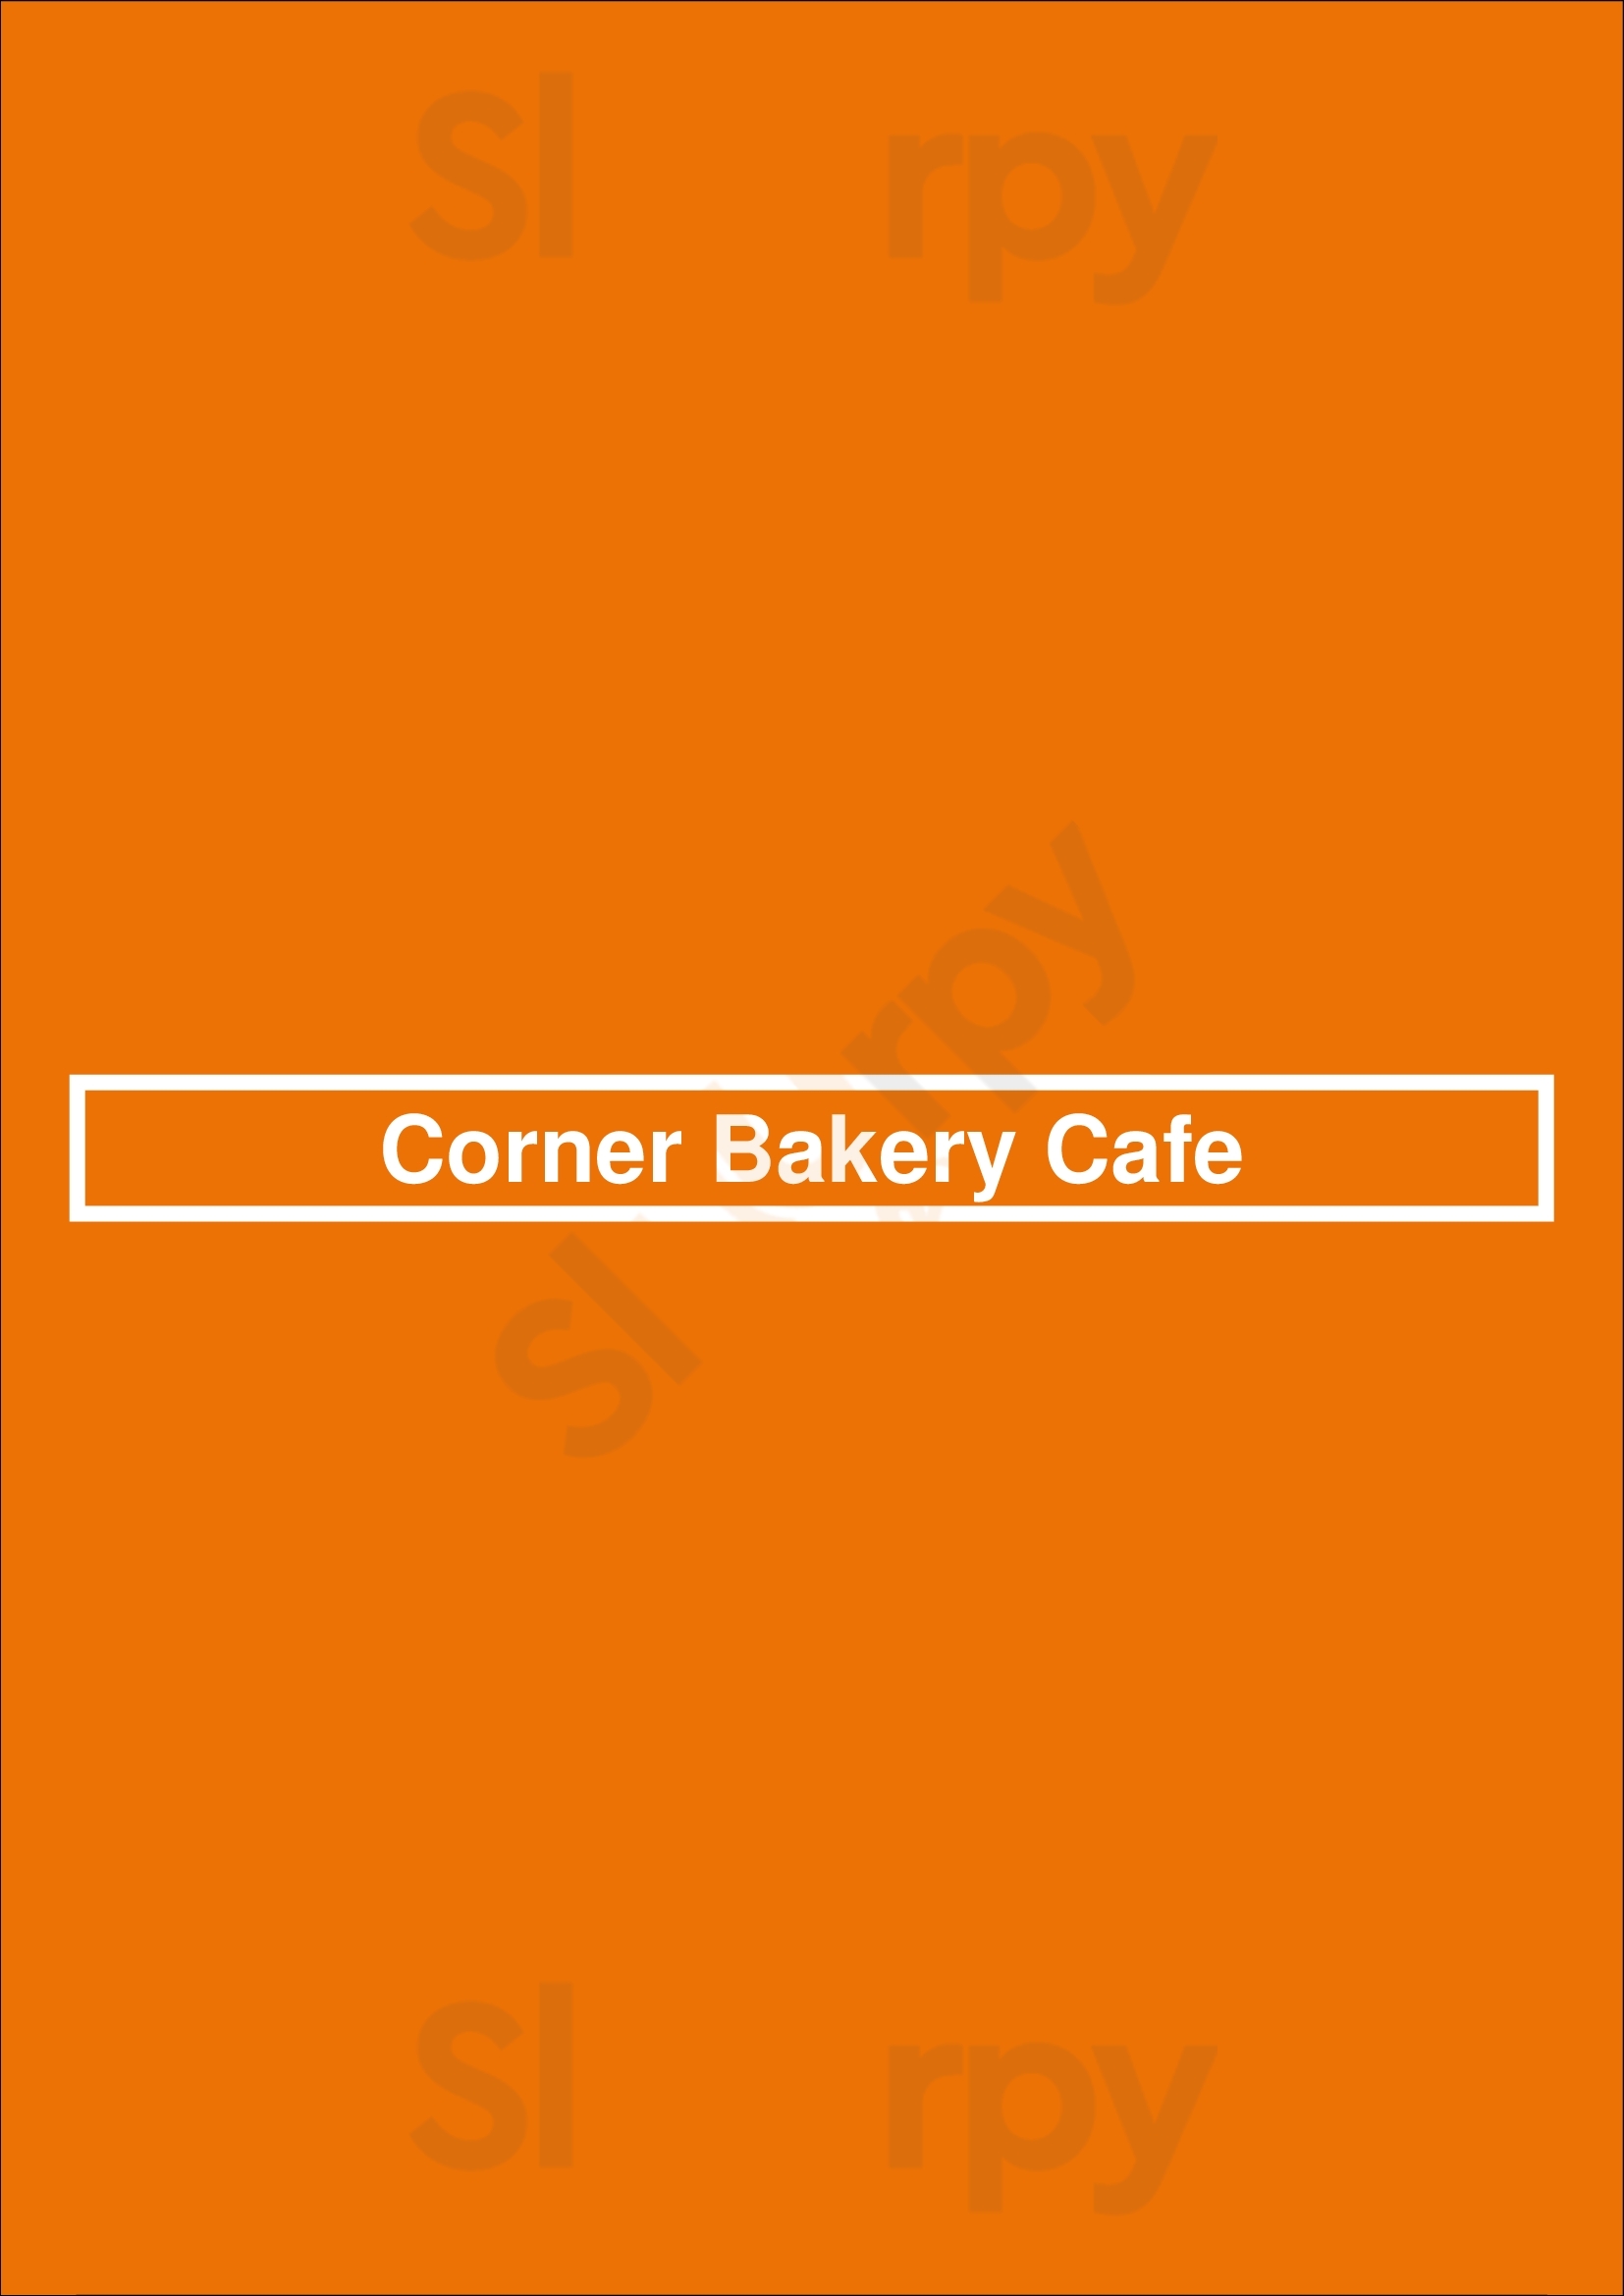 Corner Bakery Cafe Denver Menu - 1